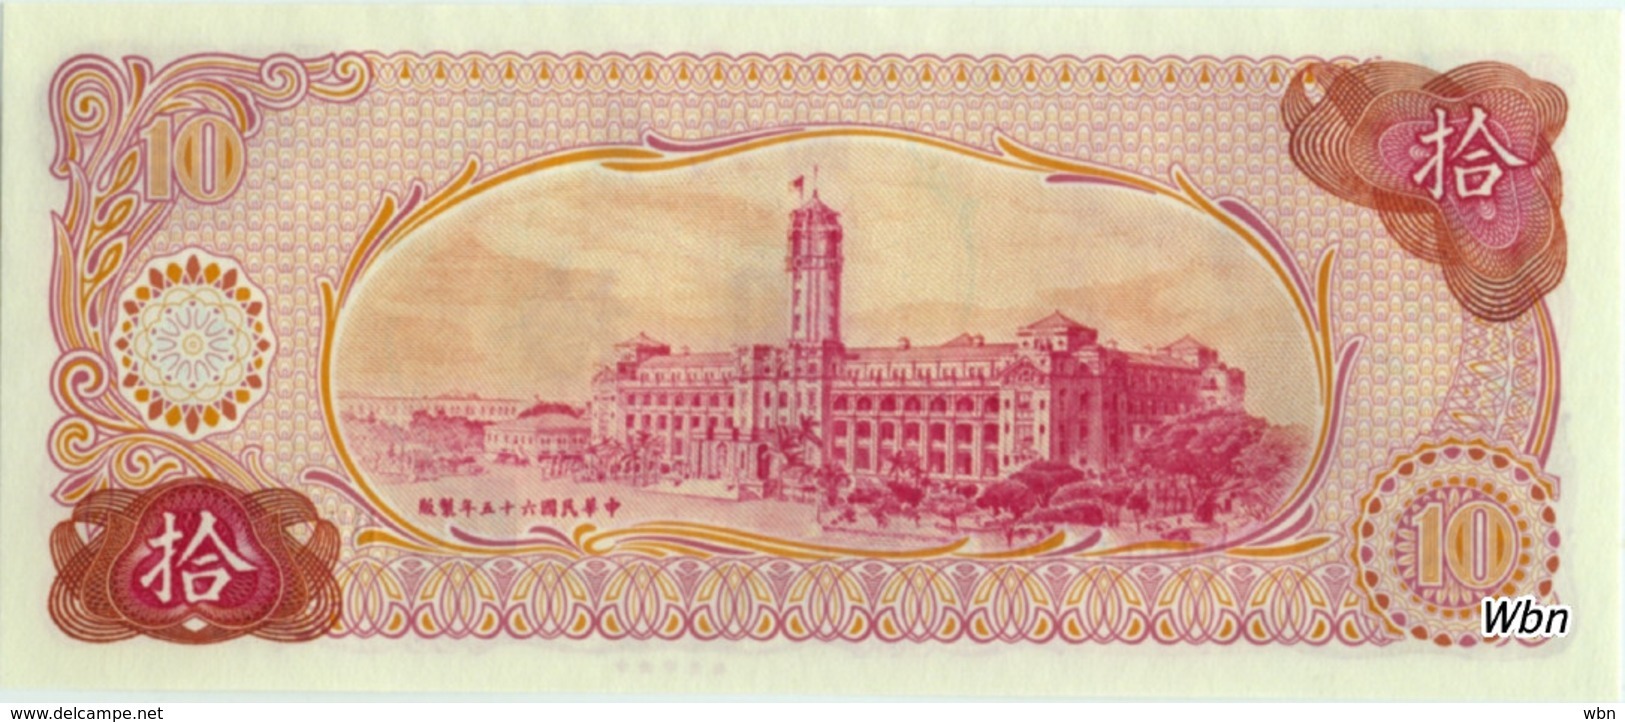 Taiwan 10 NT$ (P1984) -UNC- - Taiwan